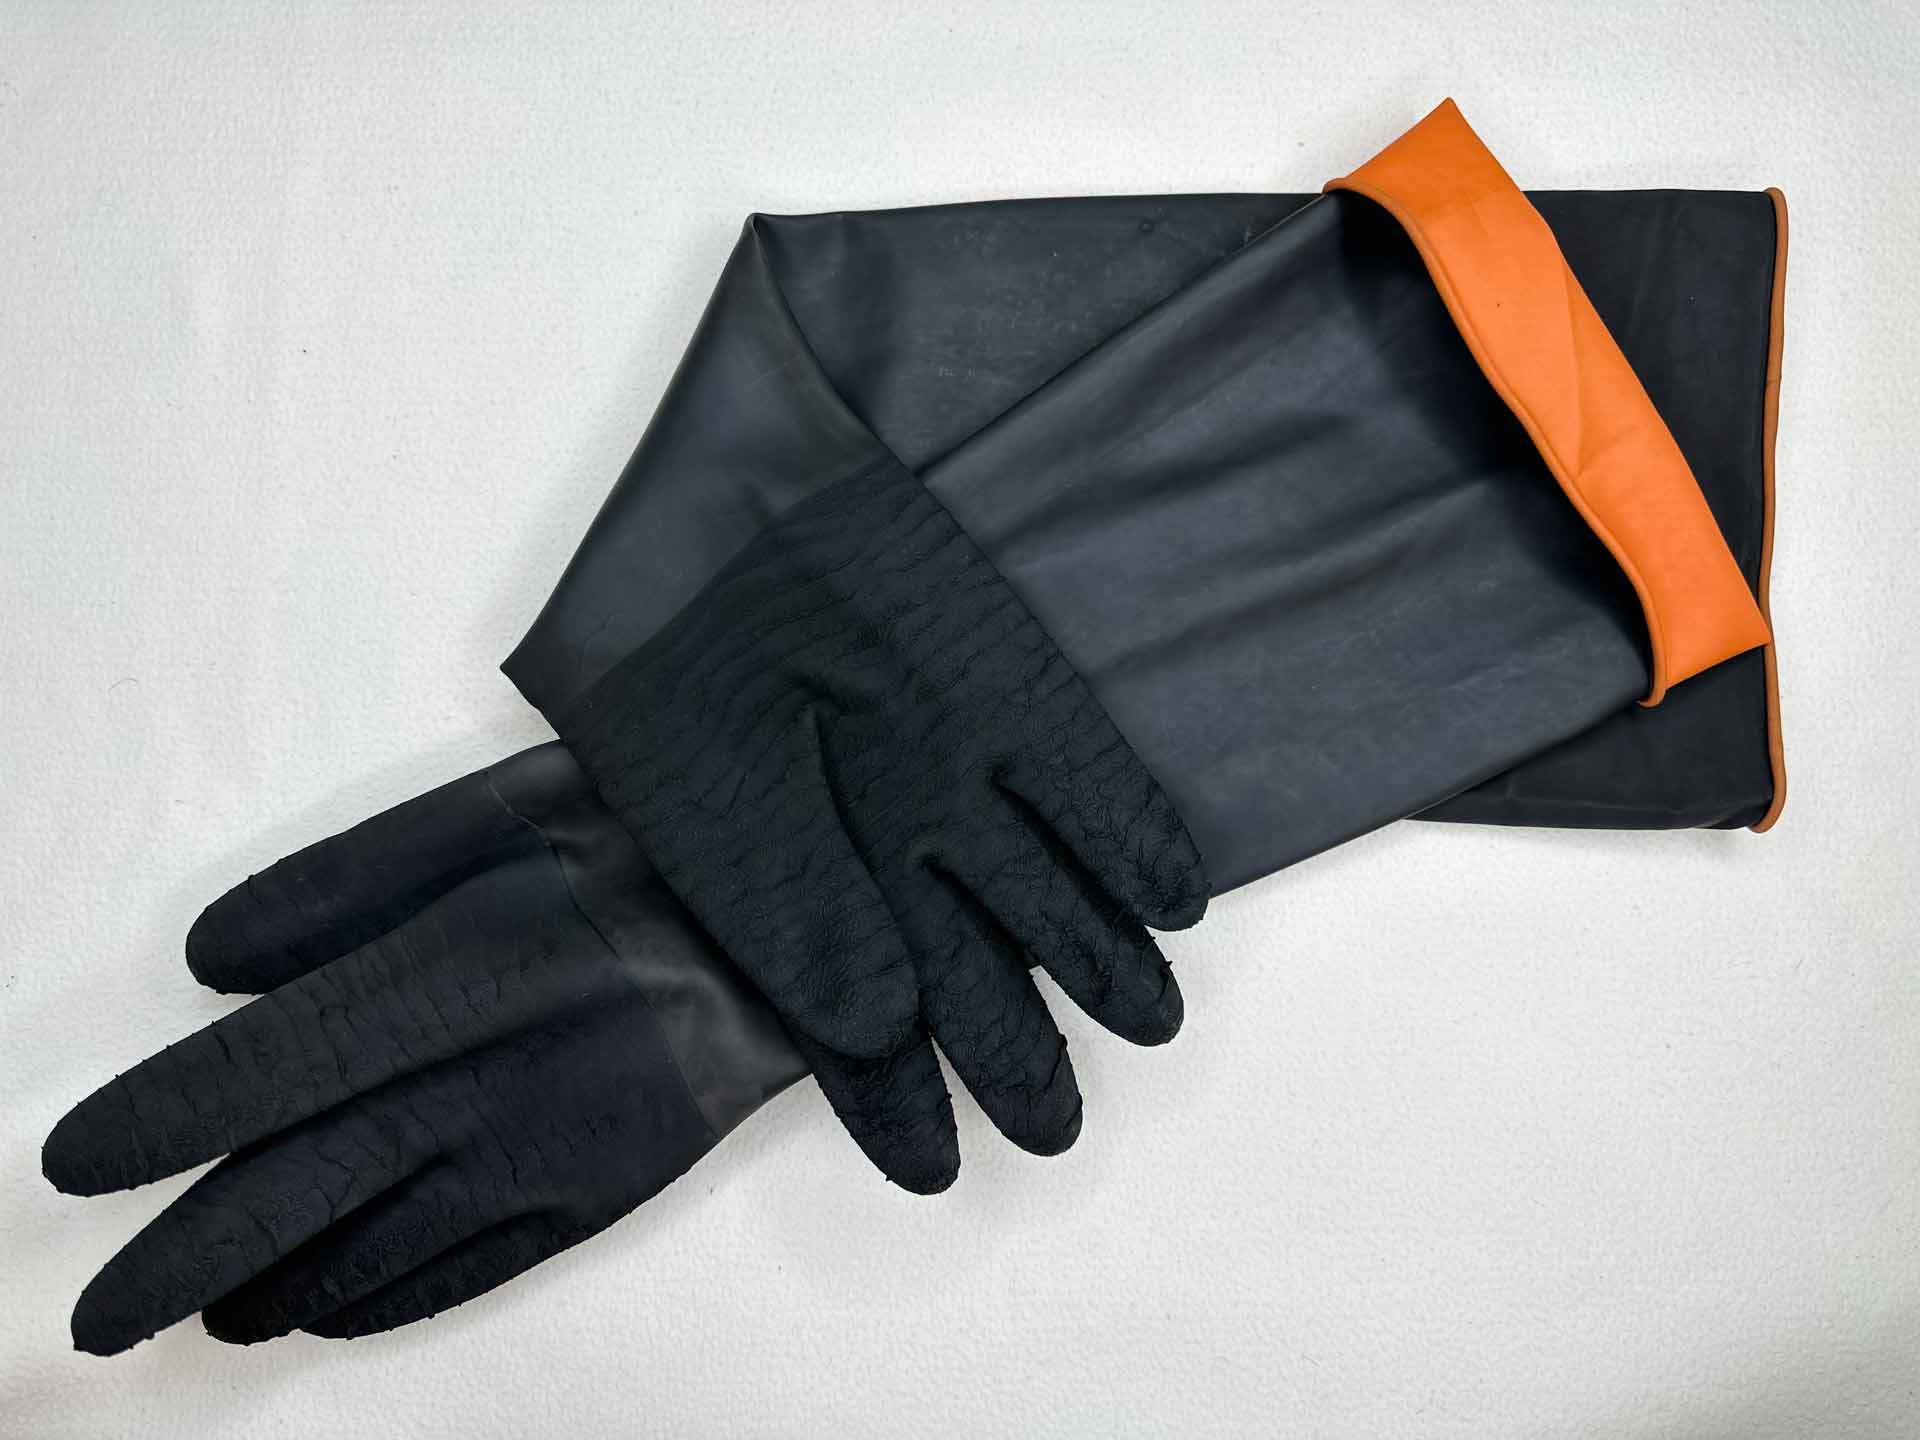 M01/PRC pressure washer gloves